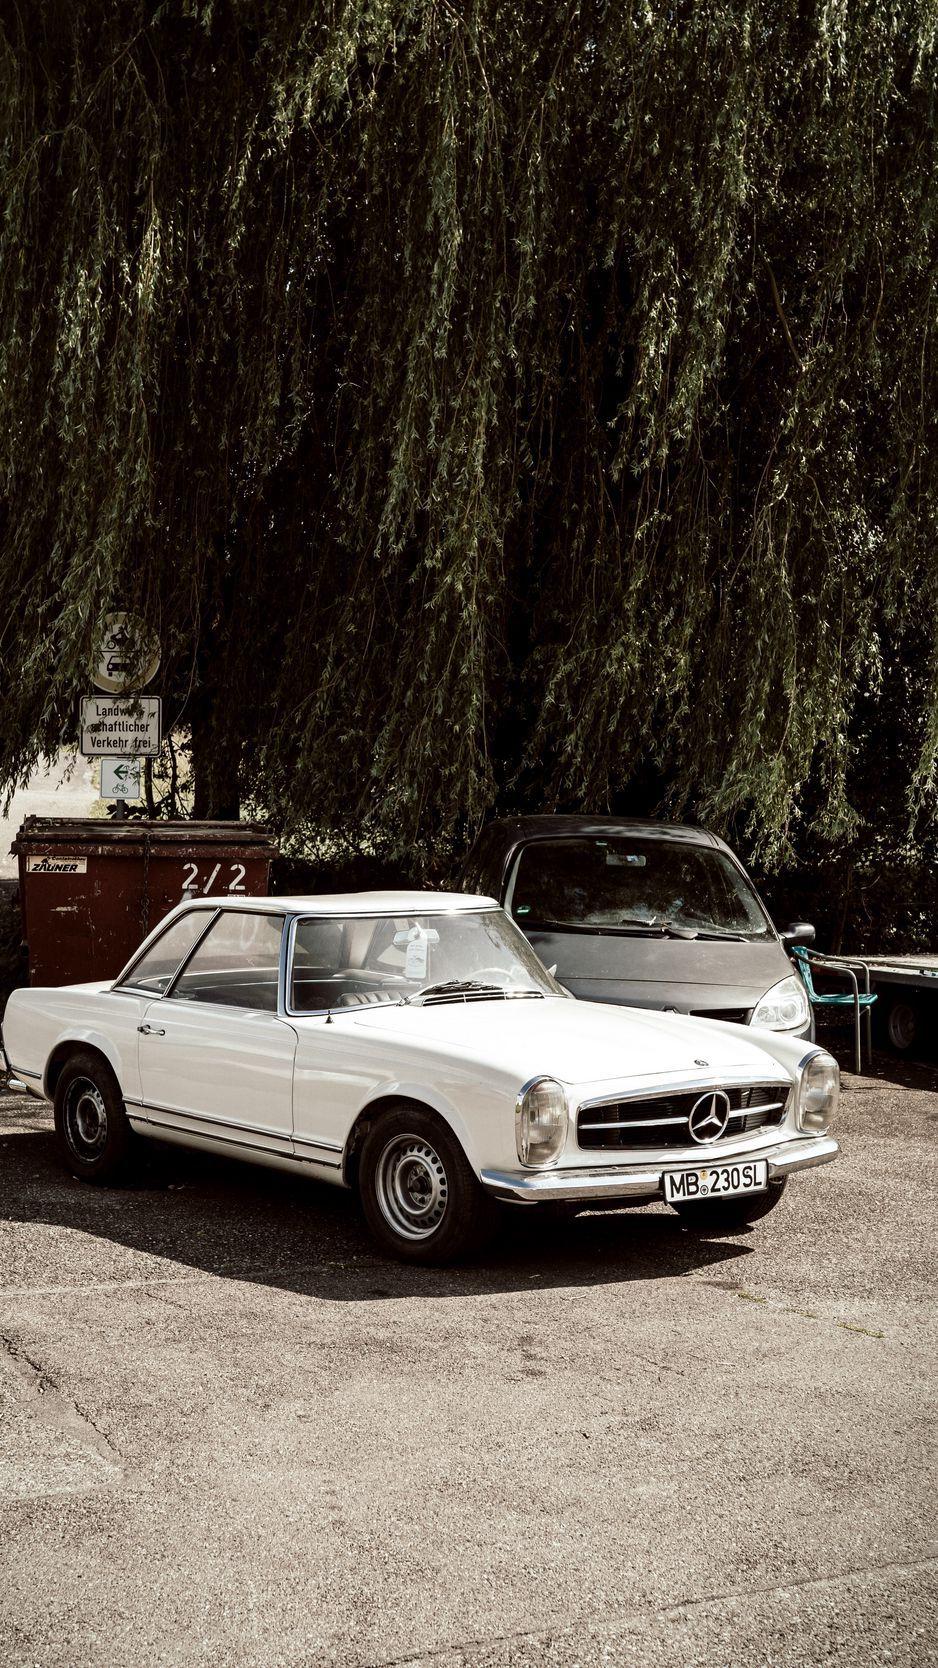 Mercedes Classic iPhone Wallpapers - Top Những Hình Ảnh Đẹp